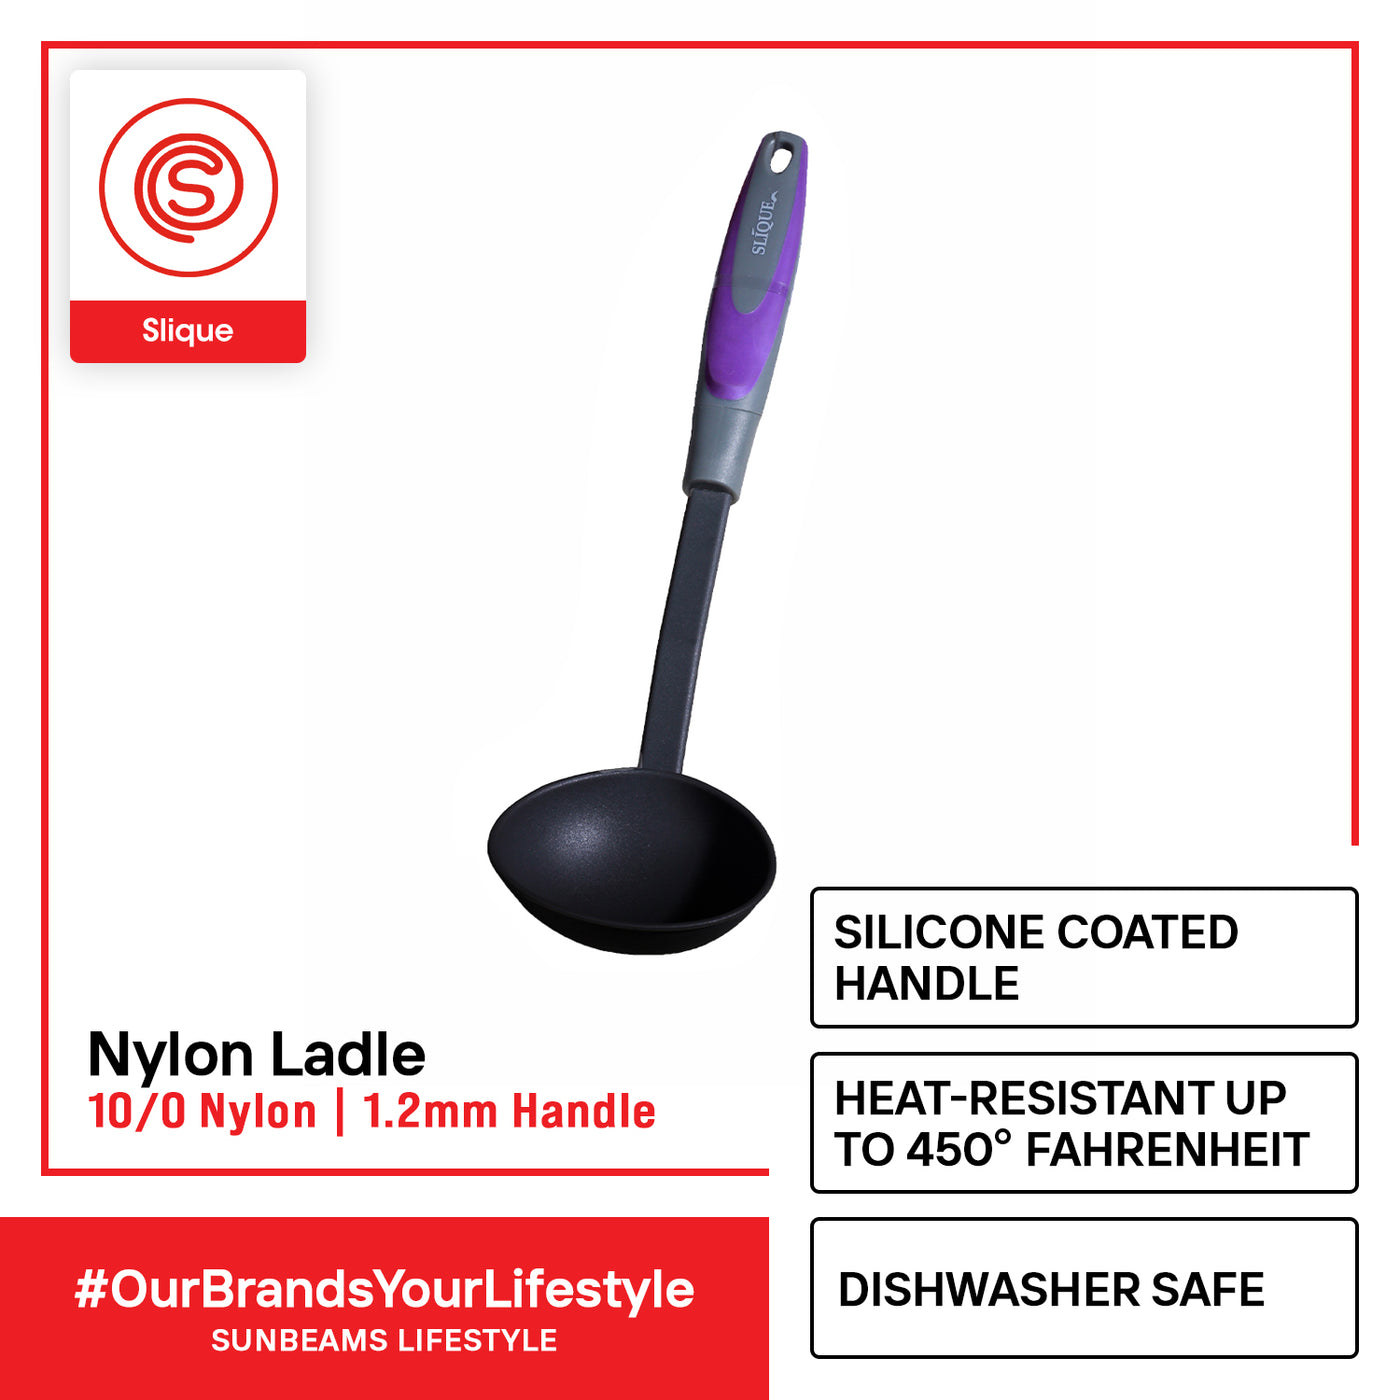 SLIQUE Premium Nylon Ladle TPR Silicone Handle Kitchen Essentials Amazing Gift Idea For Any Occasion! (Purple)